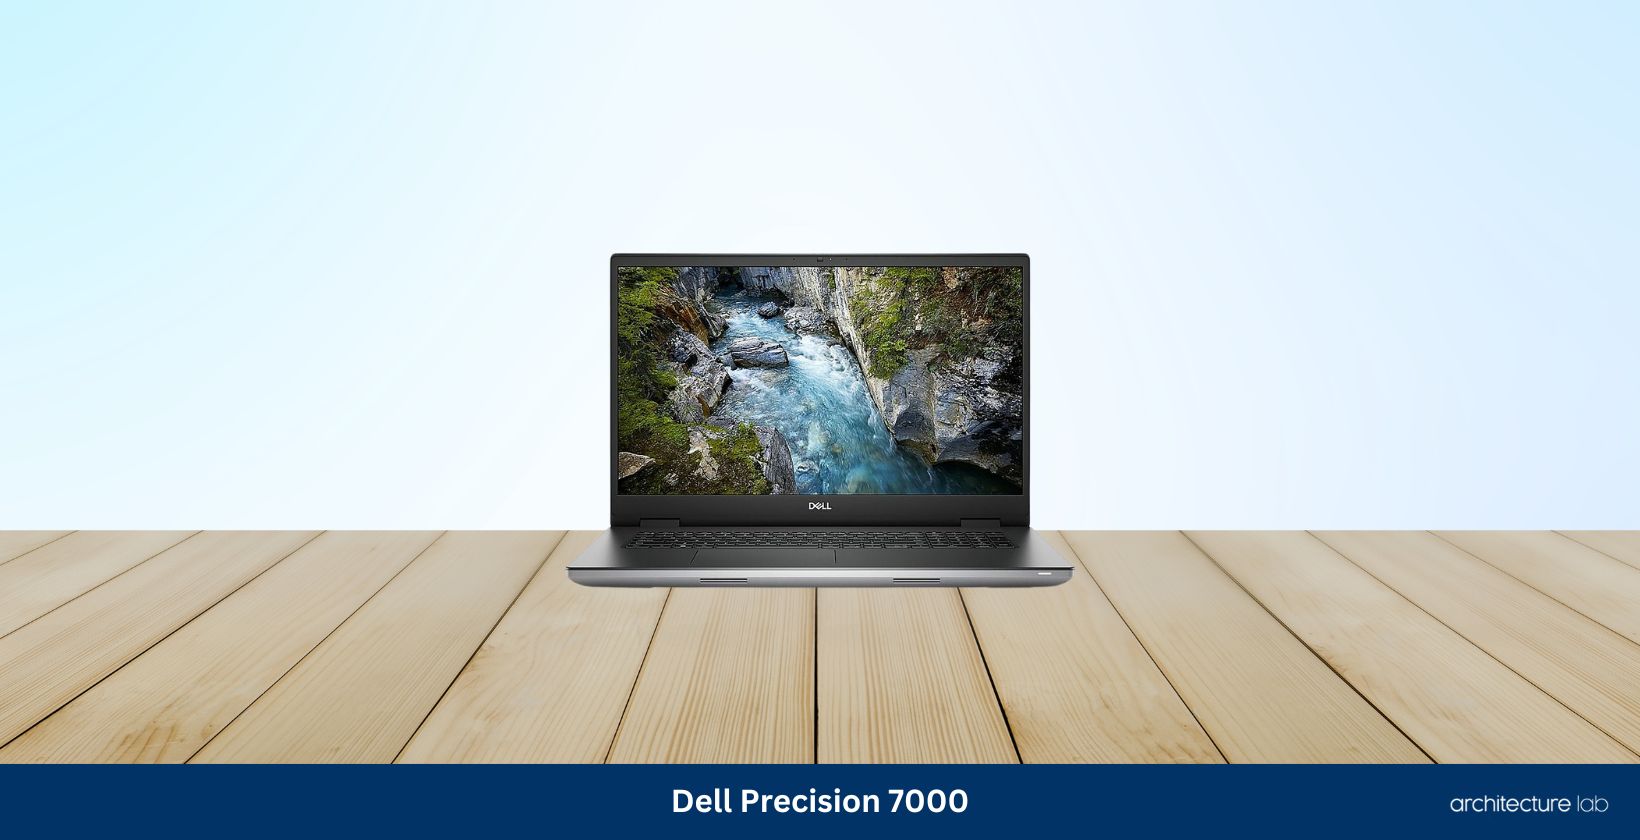 Dell precision 7000